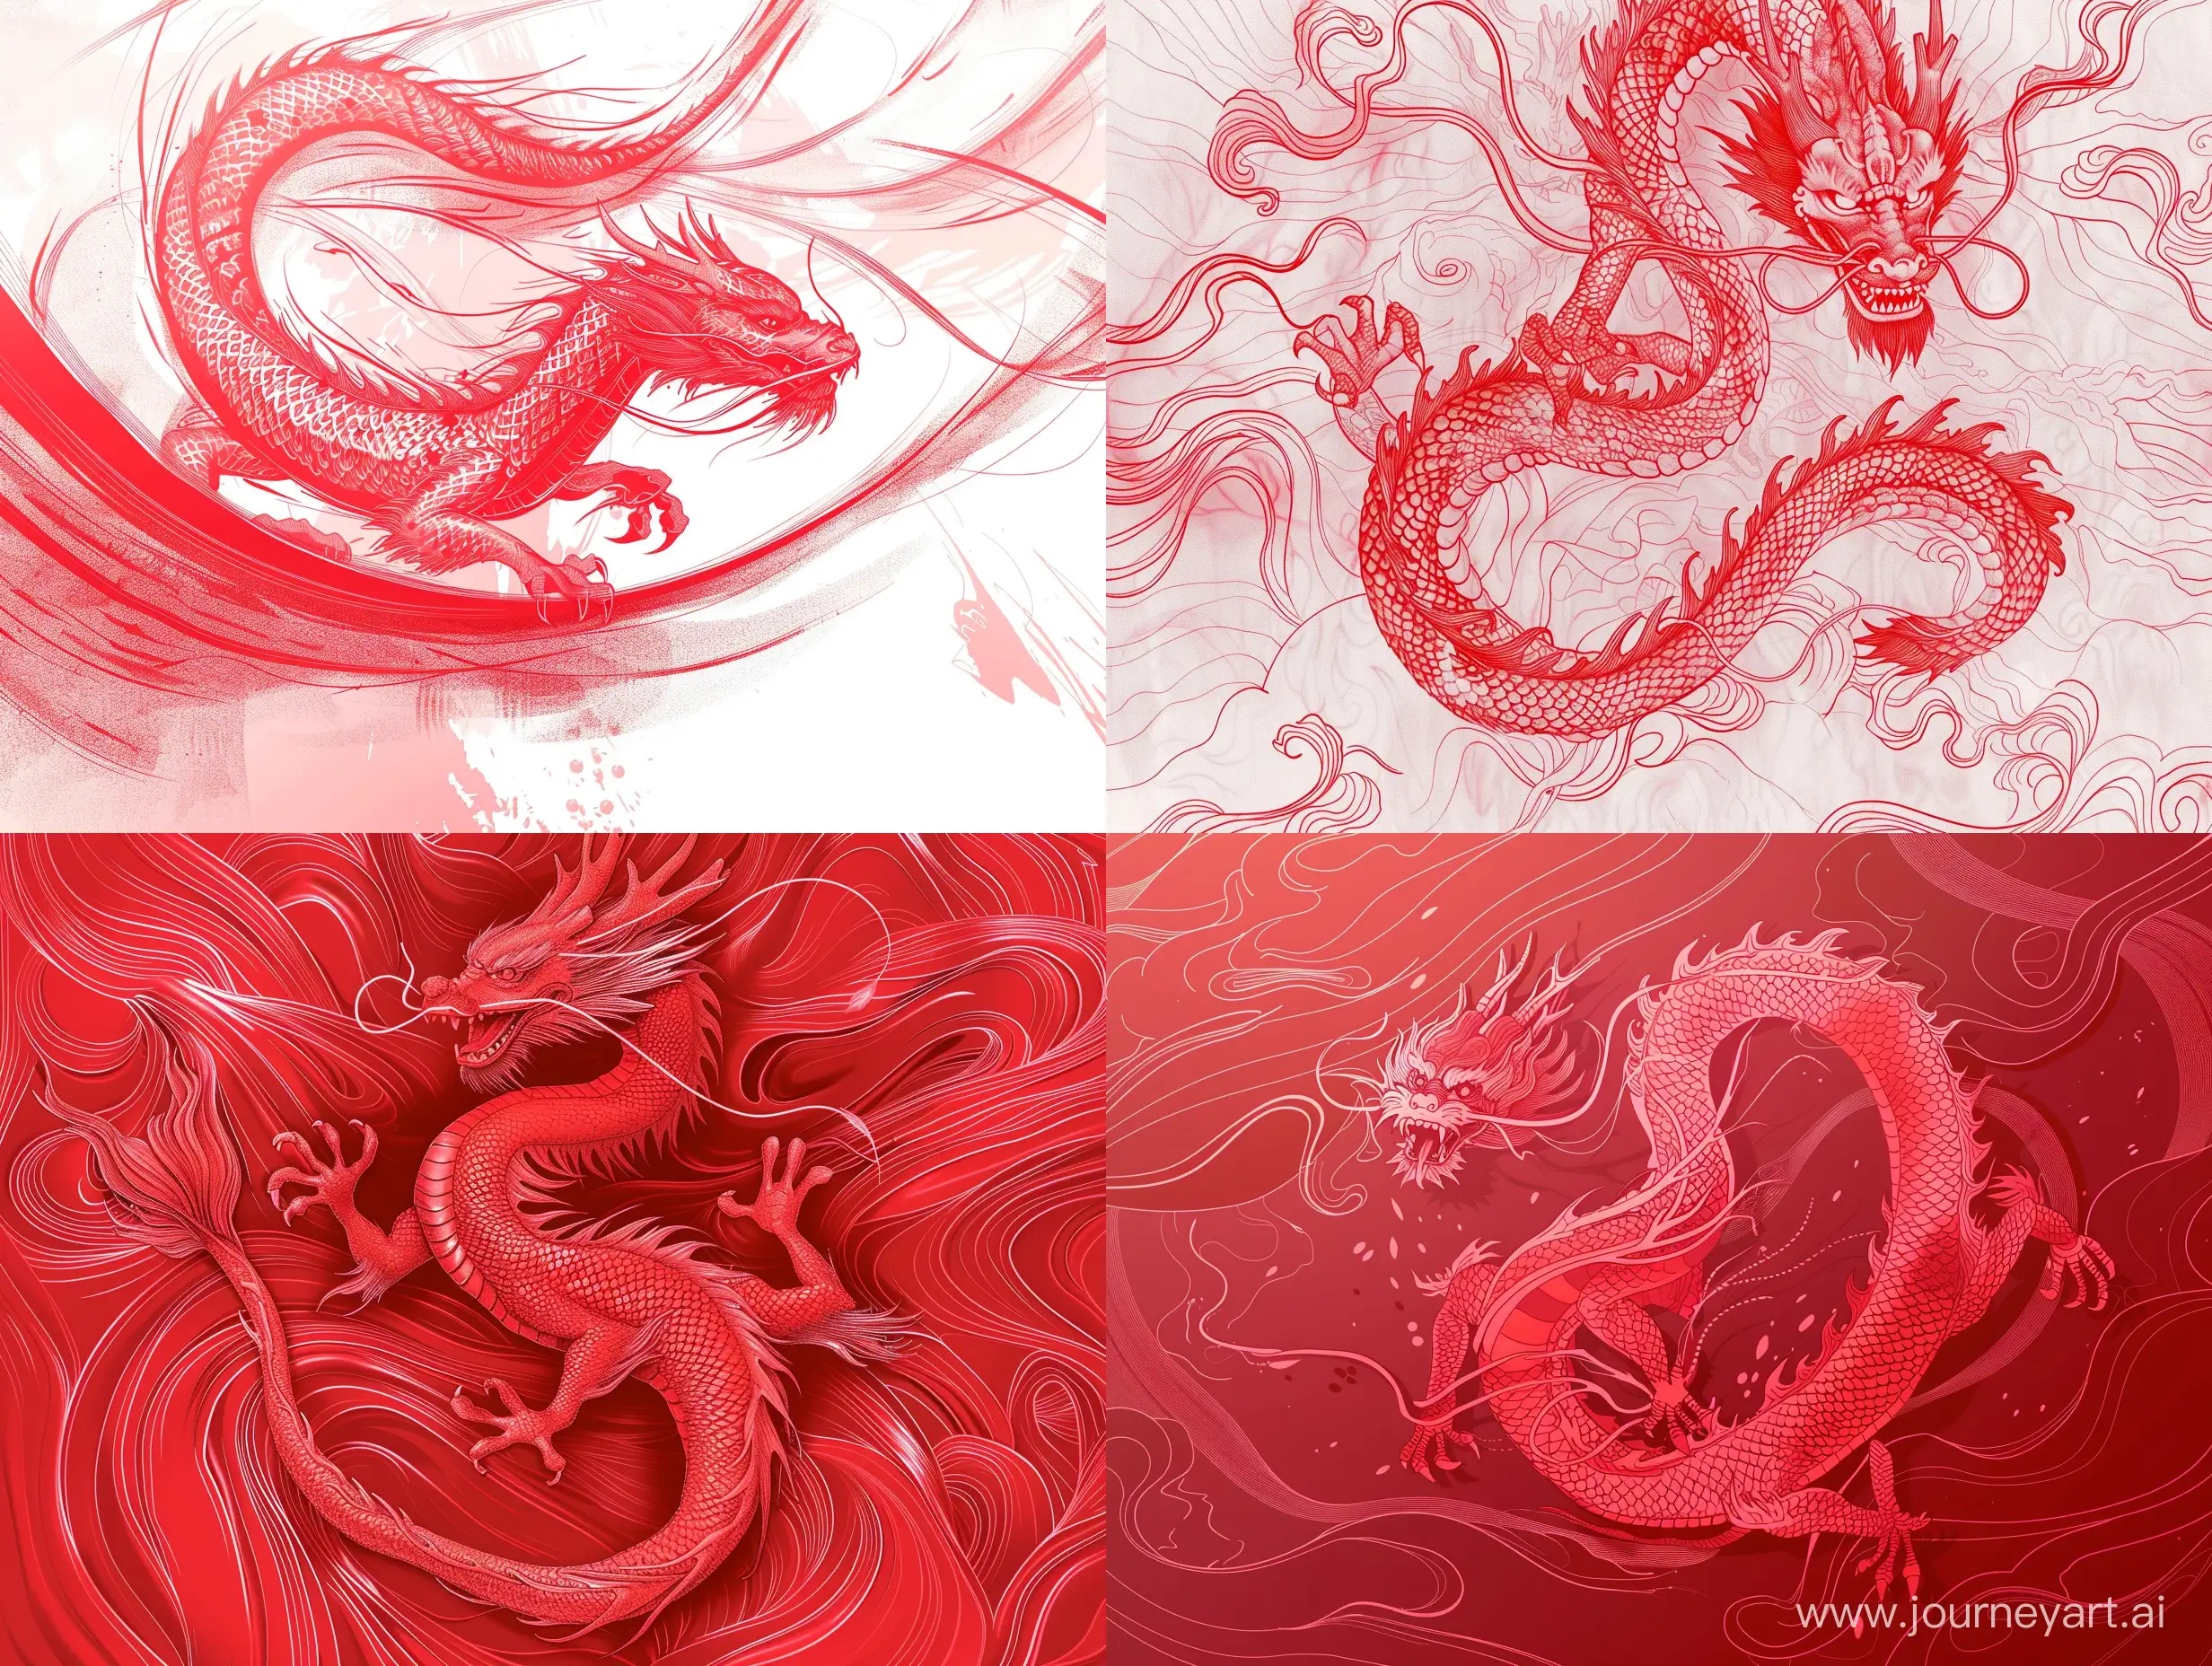 Красный китайский дракон в красных цветах двигается, окружен плавными красными линиями, в стиле эскиза, скетч, стиль татуировки, очень детализированно, красочно, наивысшее качество, 8к, 8k rendering, dynamic details, dynamic effects